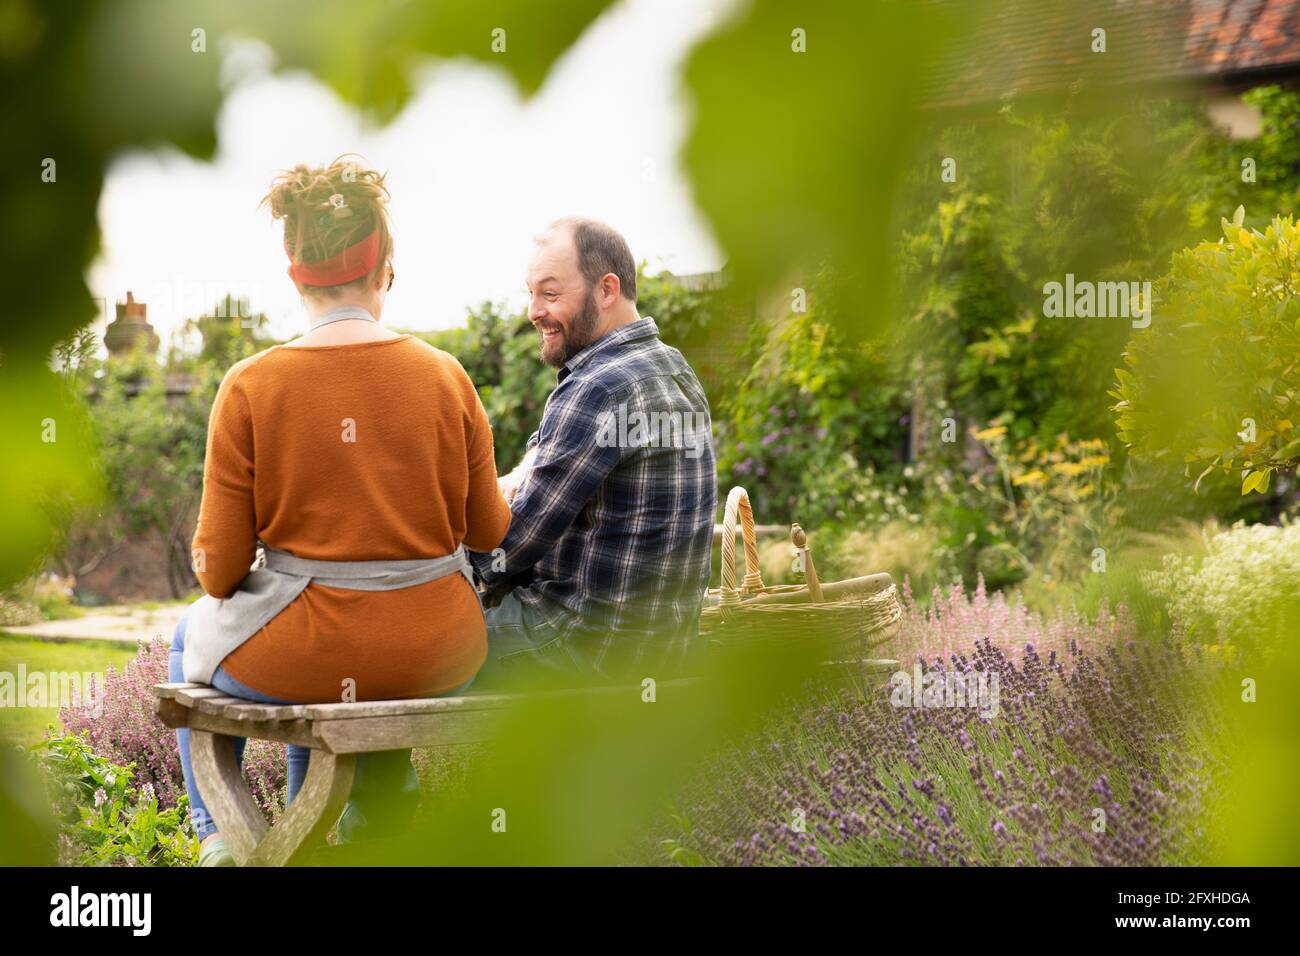 Happy couple taking a break from gardening in backyard Stock Photo